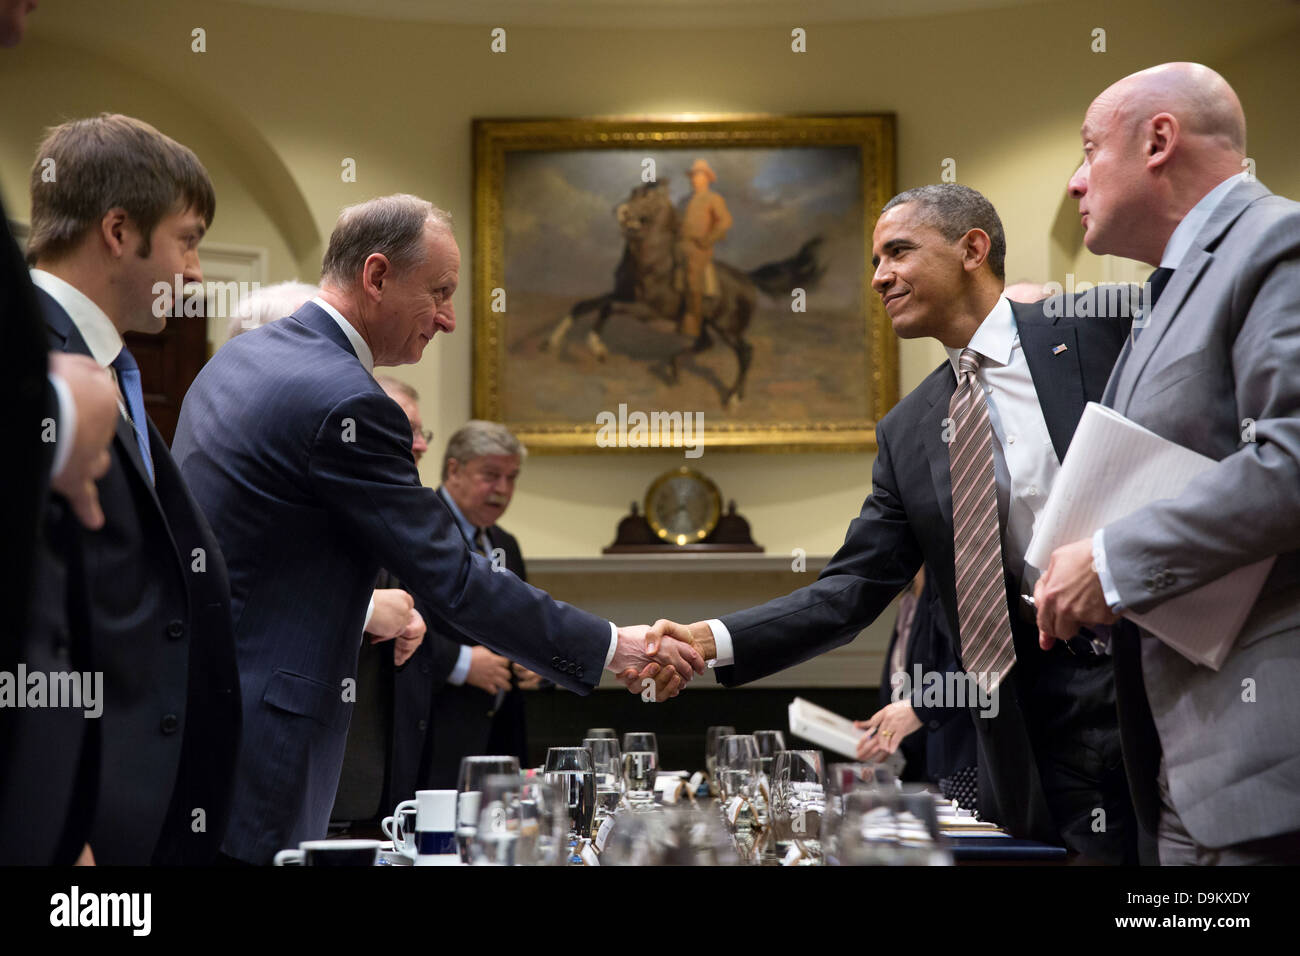 Le président américain Barack Obama descend par une réunion avec le secrétaire du Conseil de sécurité russe Nikolaï Patrushev dans la Roosevelt Room de la Maison Blanche le 22 mai 2013 à Washington, DC. Banque D'Images